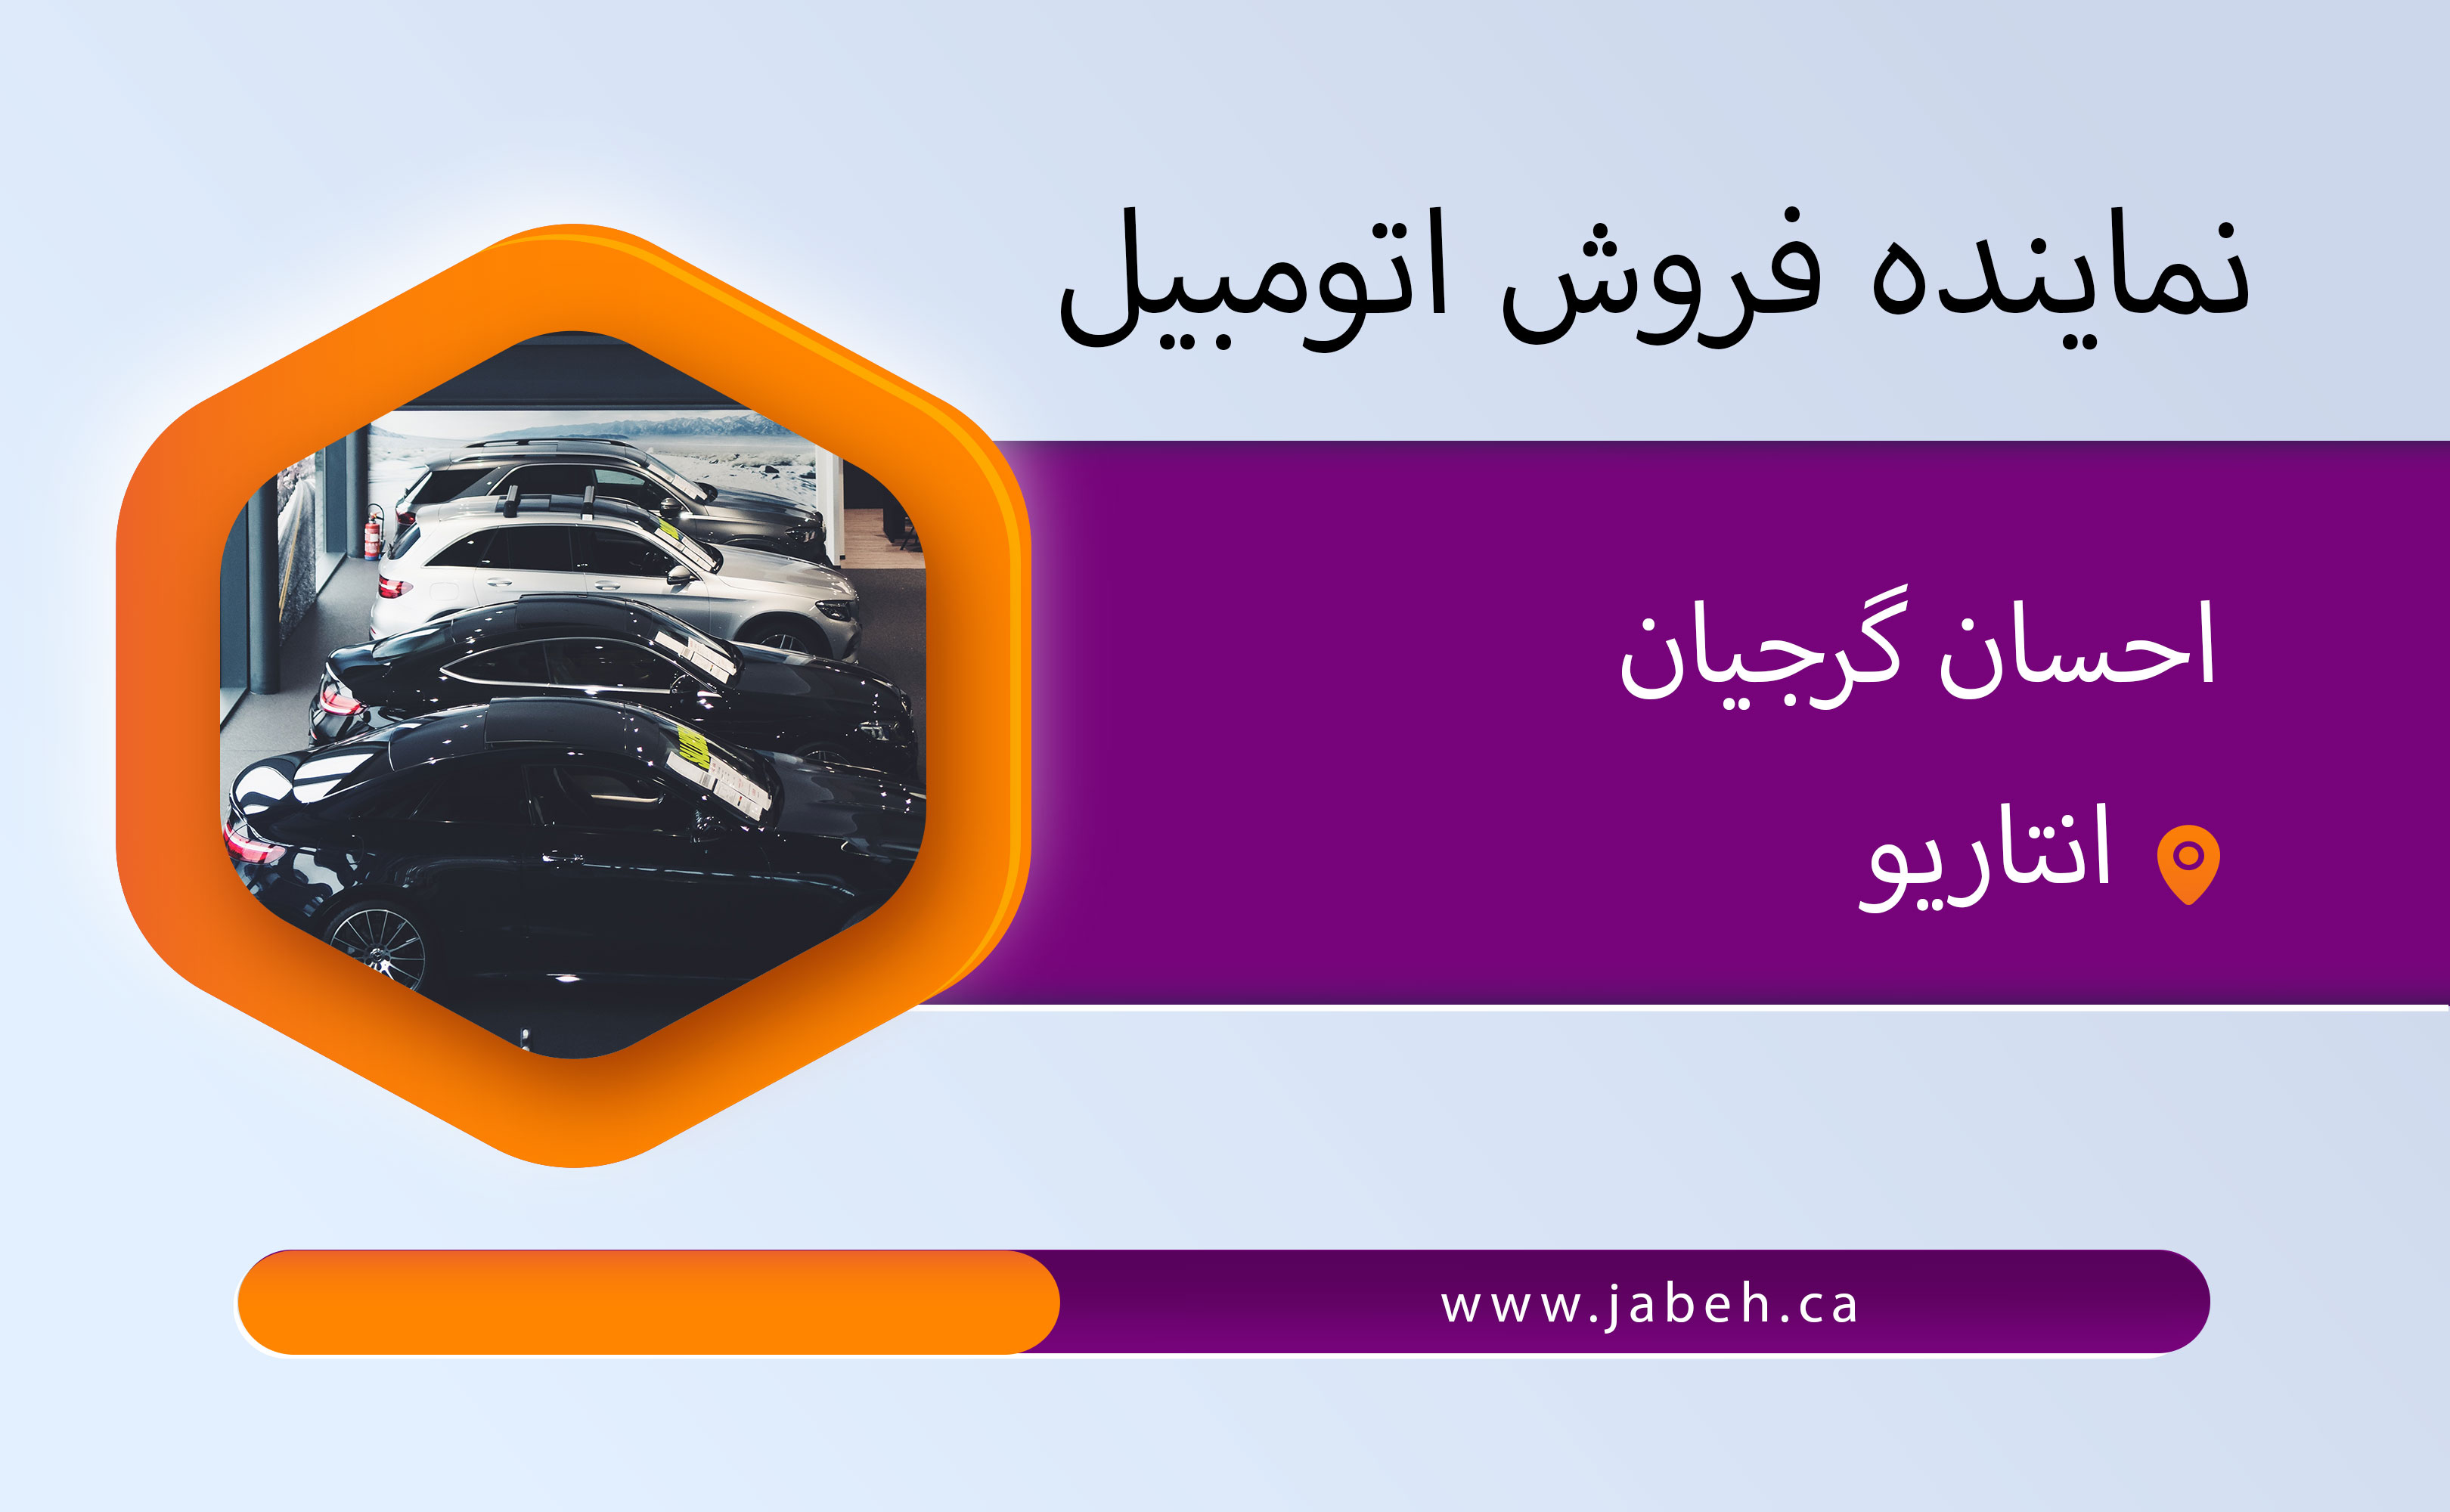 نماینده ایرانی فروش اتومبیل احسان گرجیان در انتاریو